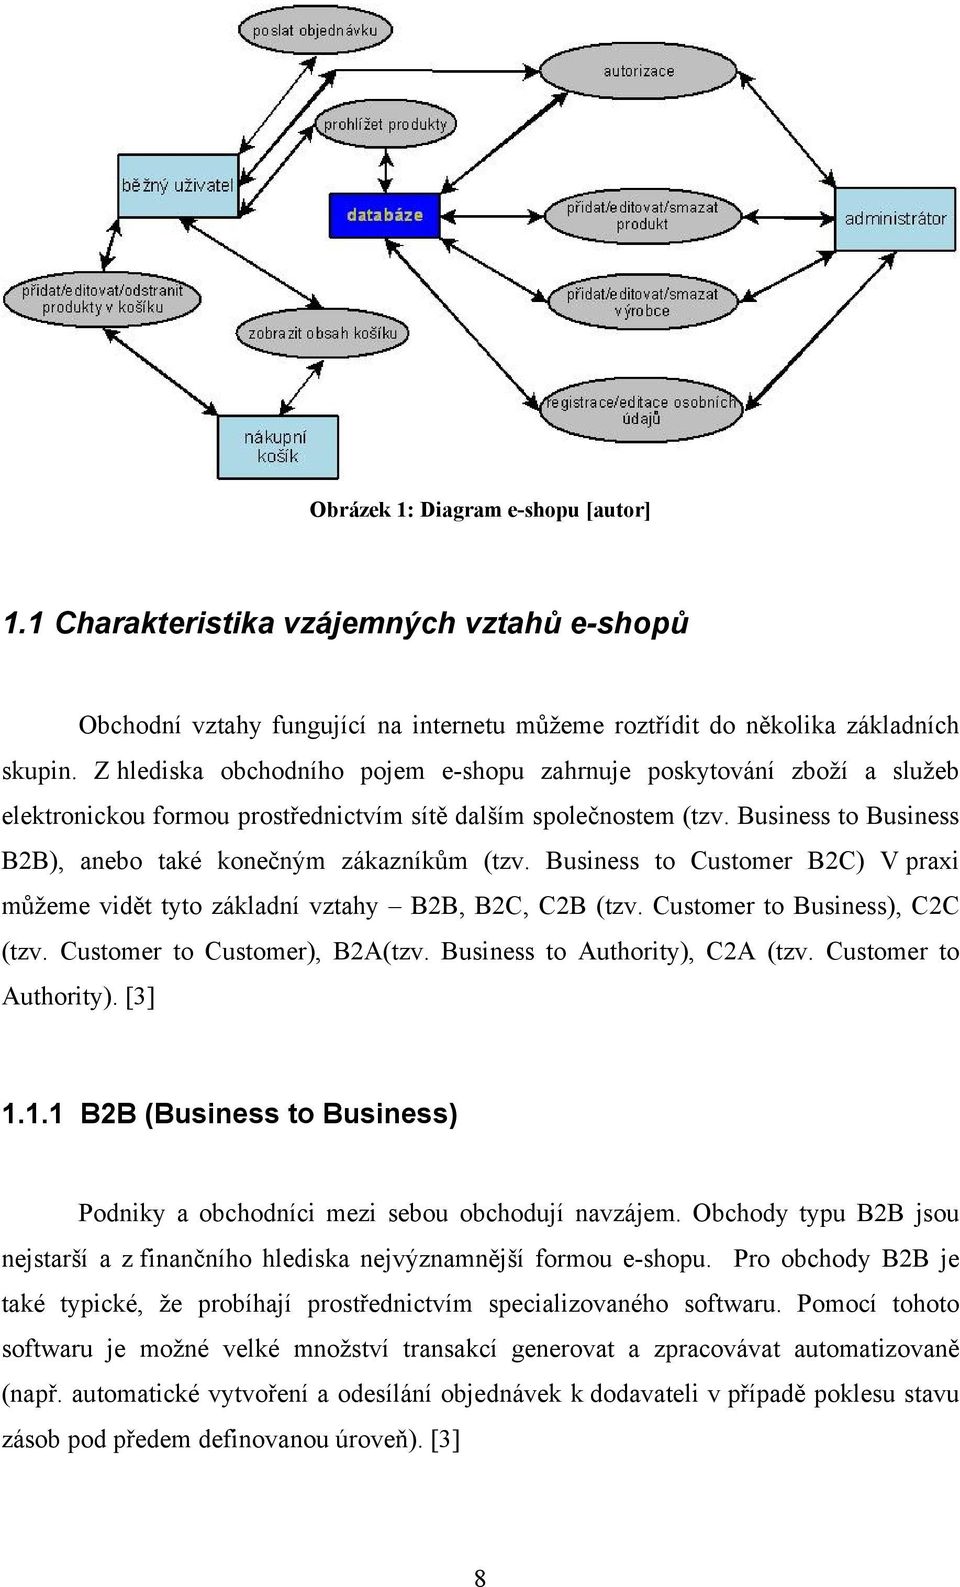 Business to Business B2B), anebo také konečným zákazníkům (tzv. Business to Customer B2C) V praxi můžeme vidět tyto základní vztahy B2B, B2C, C2B (tzv. Customer to Business), C2C (tzv.